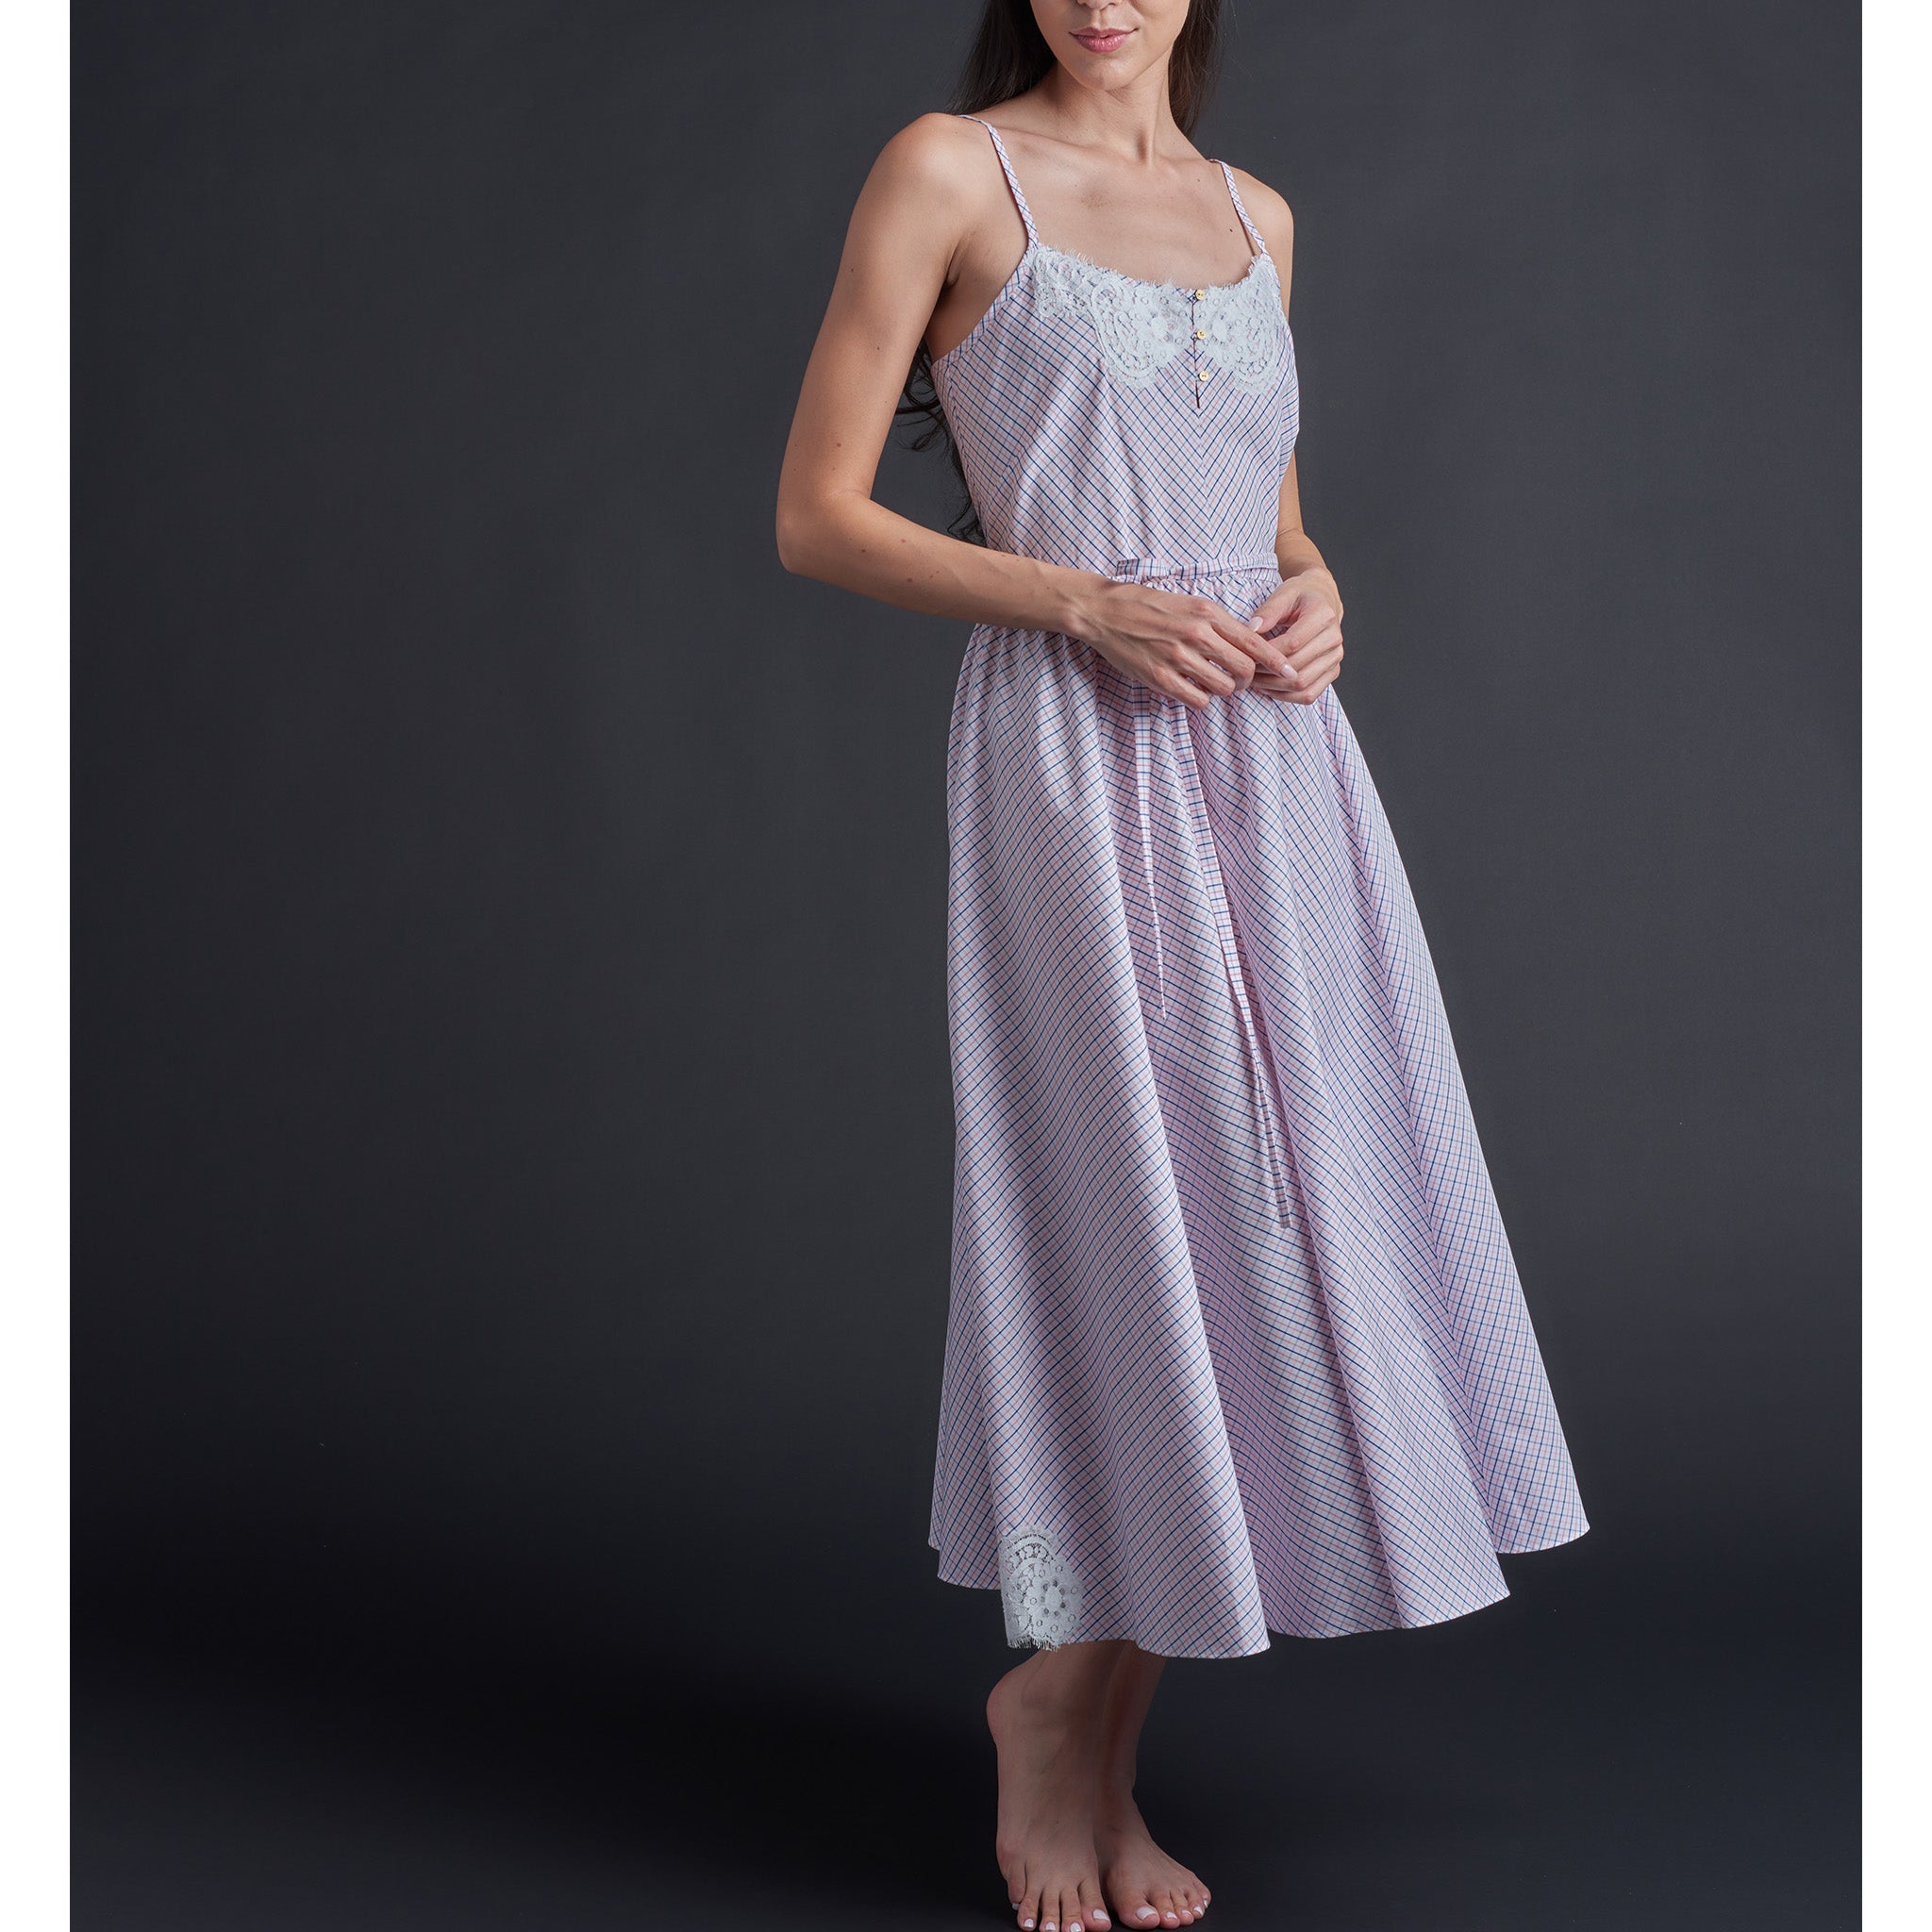 Lilia Slip Dress in Pink Blue White Check Italian Cotton